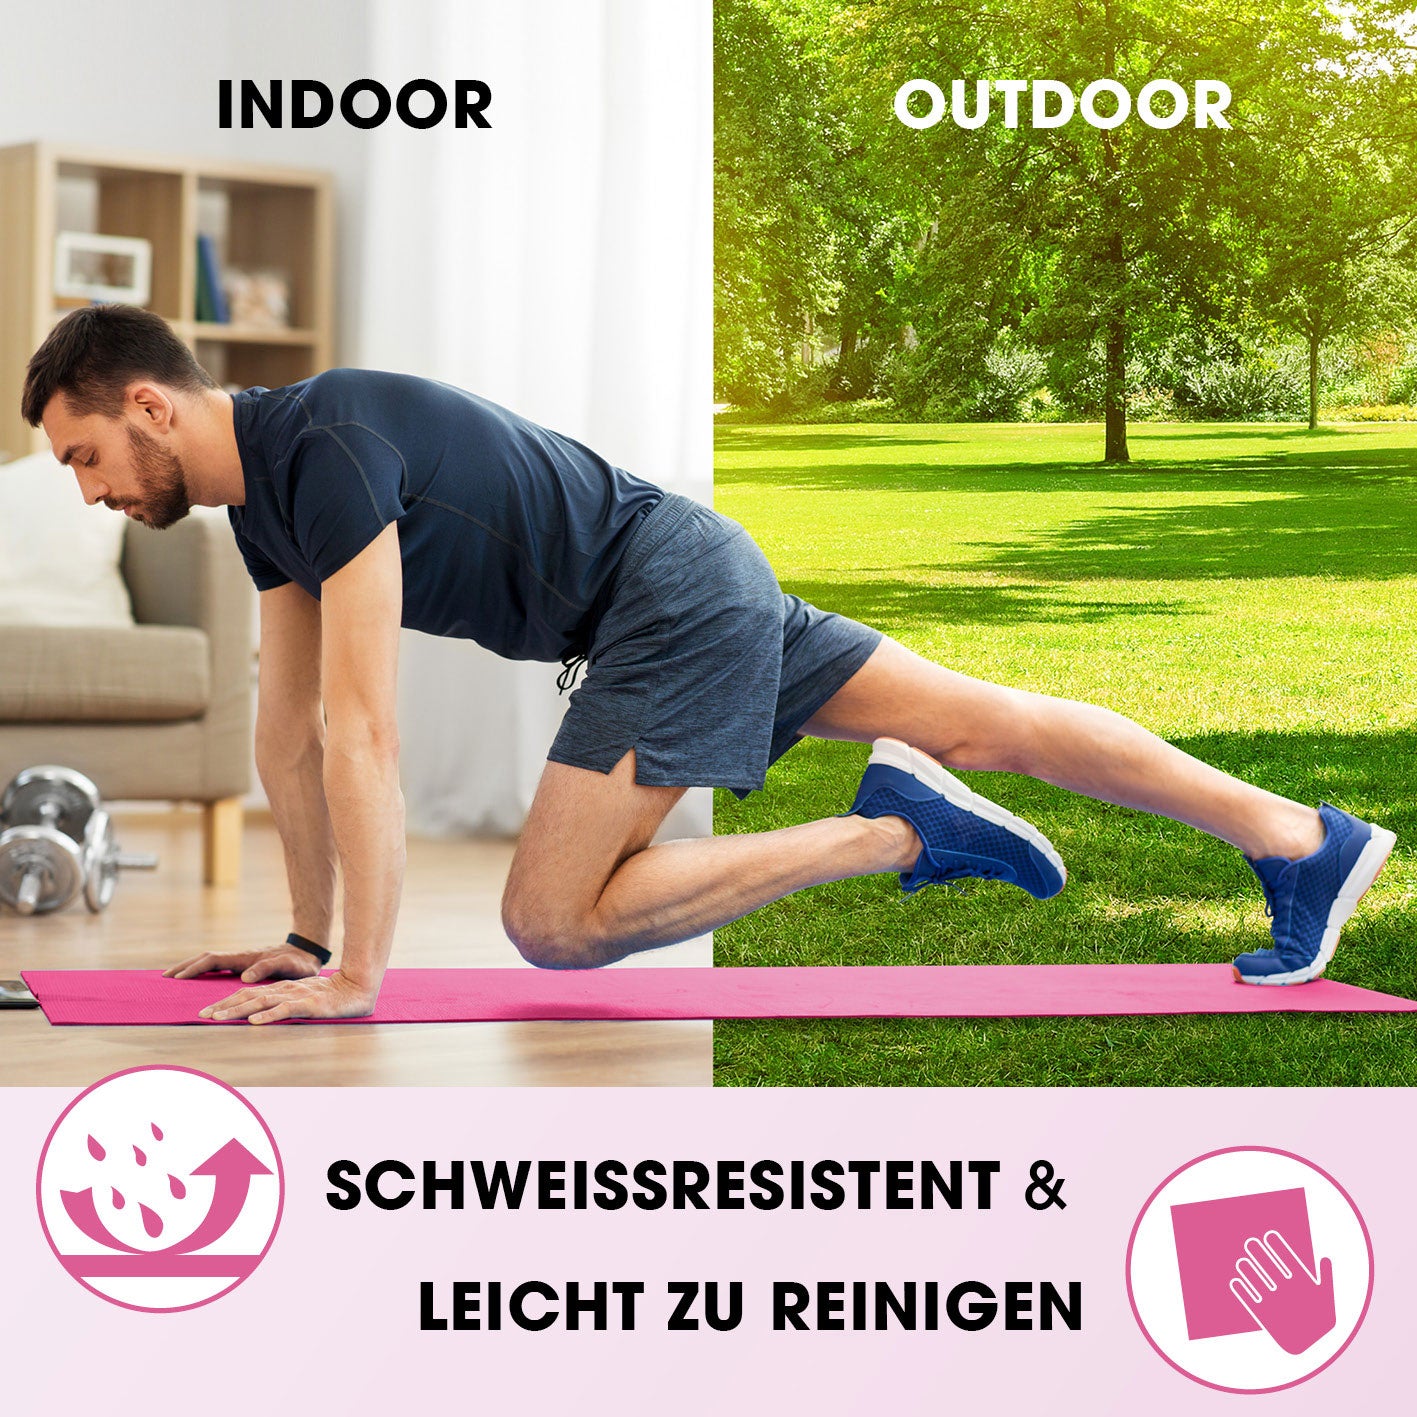 Fitness- und Gymnastikmatte - 183 x 61 x 1,5 cm - Pink